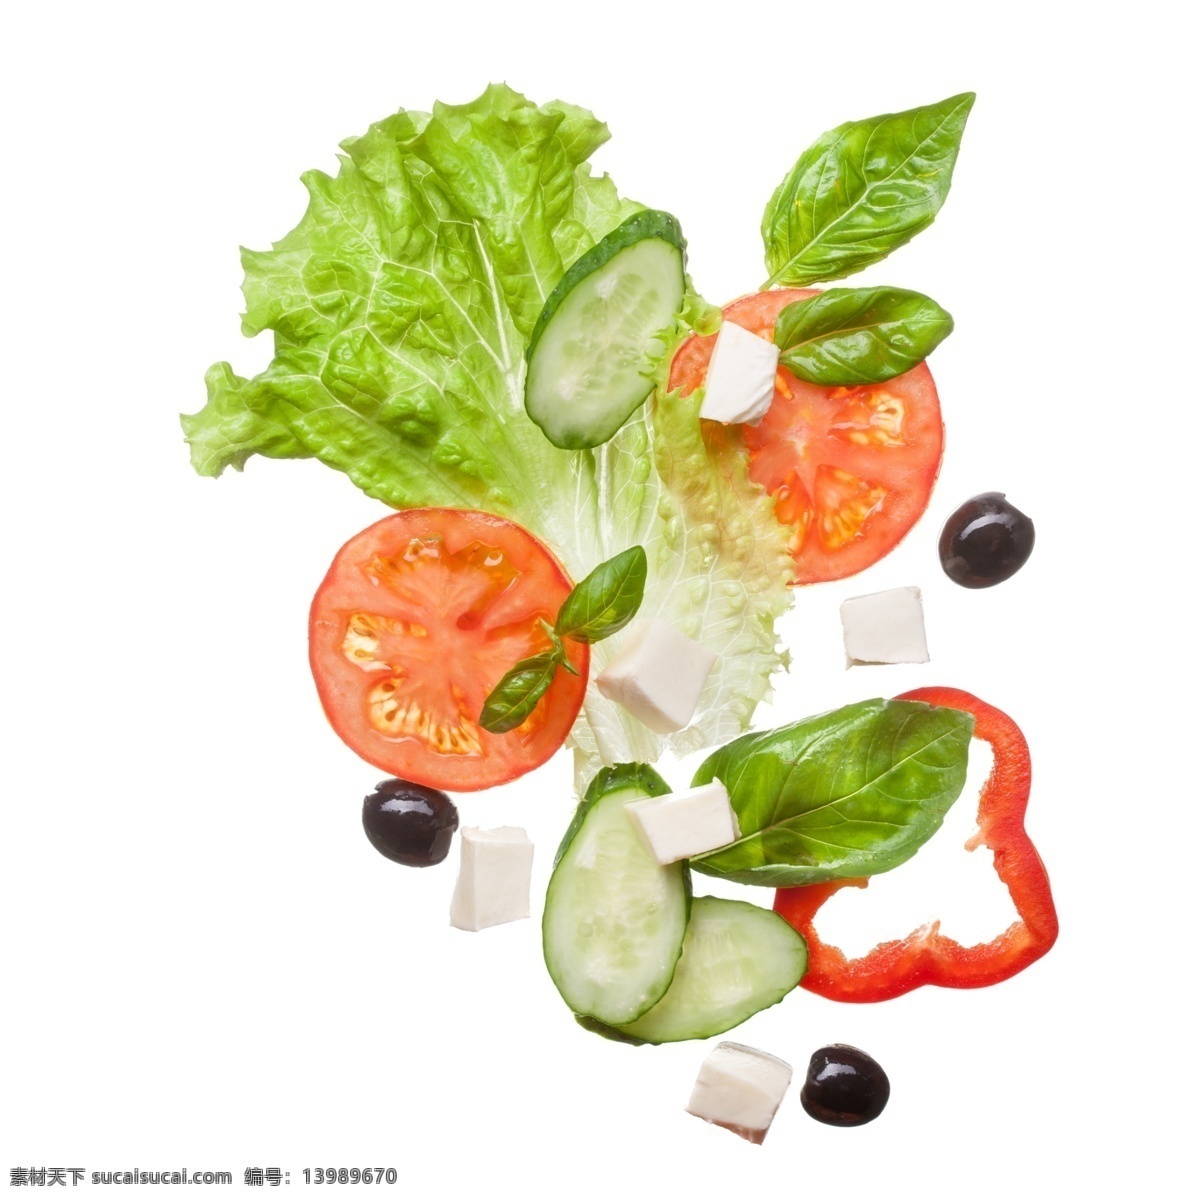 精美 素菜 画面 蔬菜 psd蔬菜 蔬菜素材 平面设计素材 精美素材 精美蔬菜 美味蔬菜 唯美蔬菜 白色